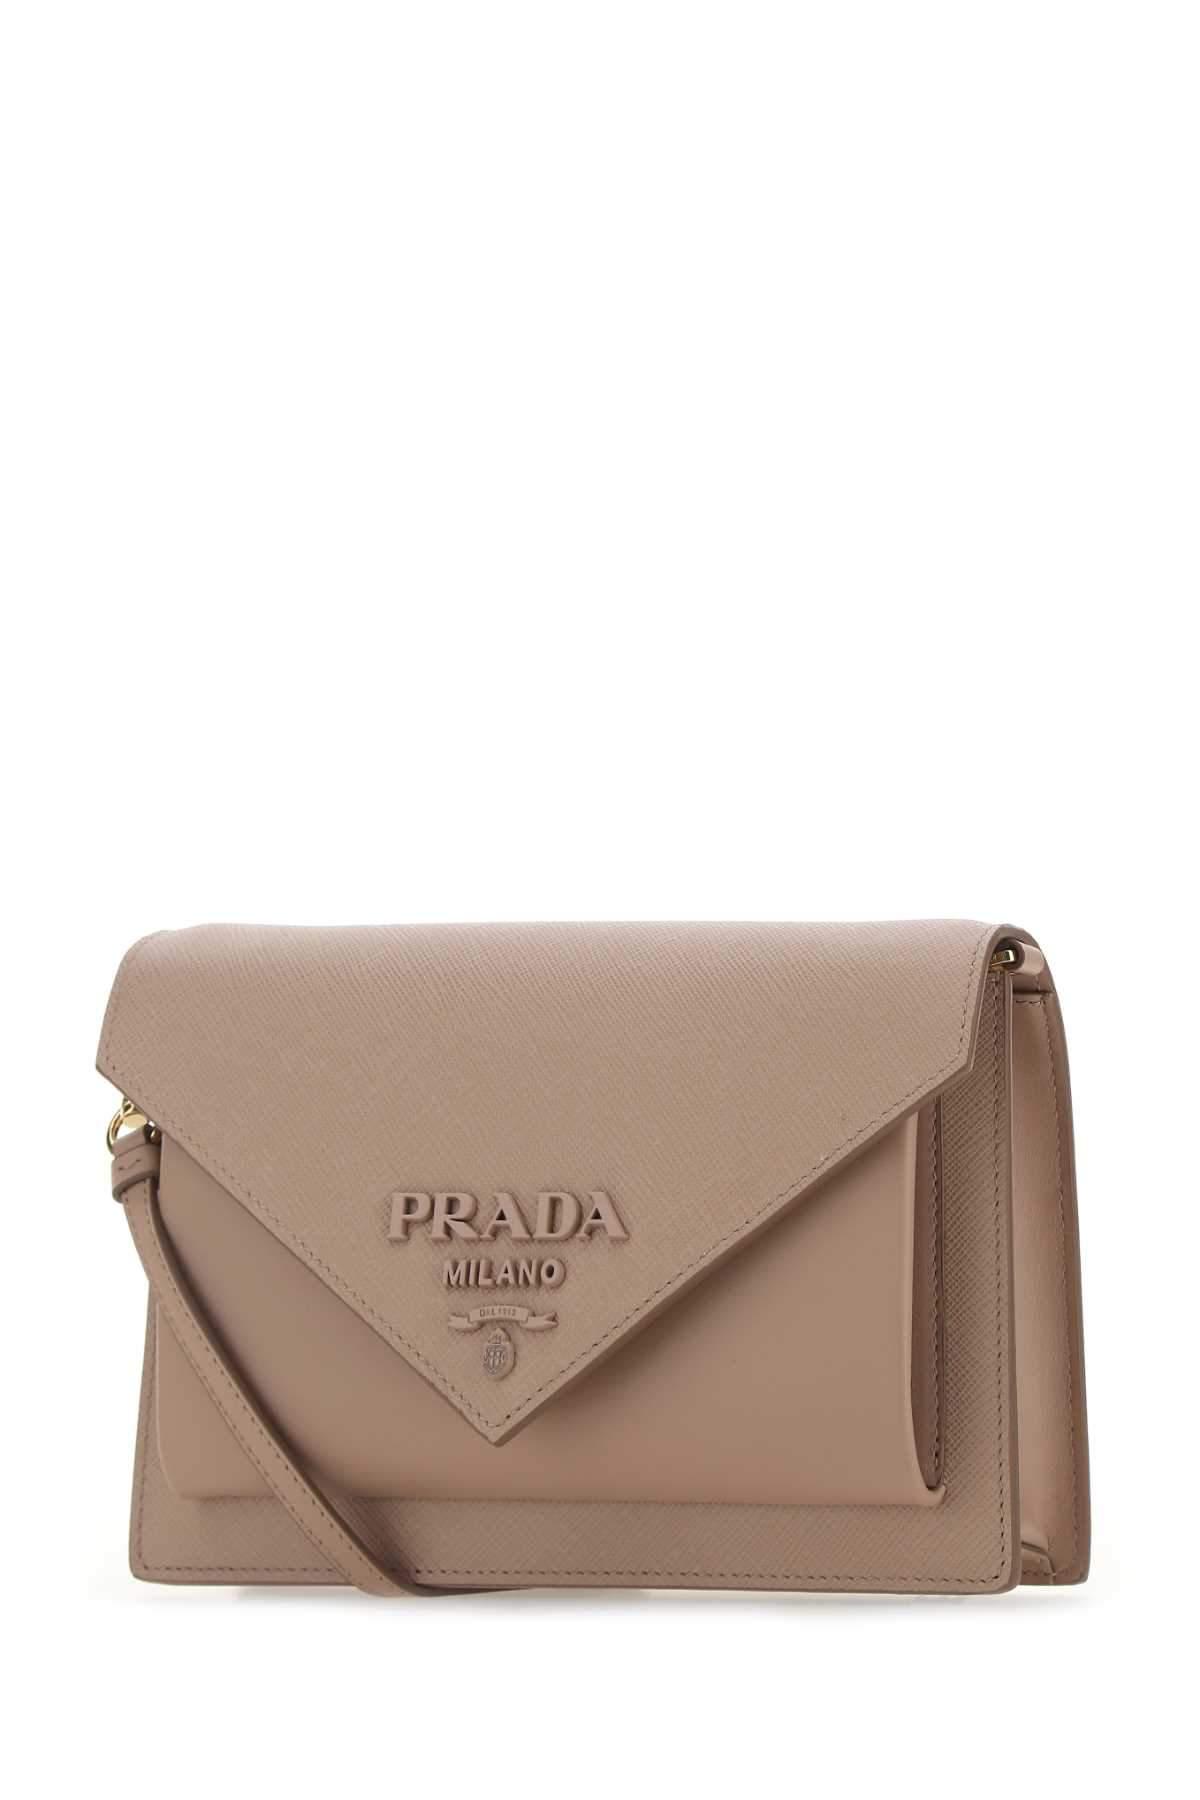 Prada Logo Envelope Crossbody Bag in Natural | Lyst